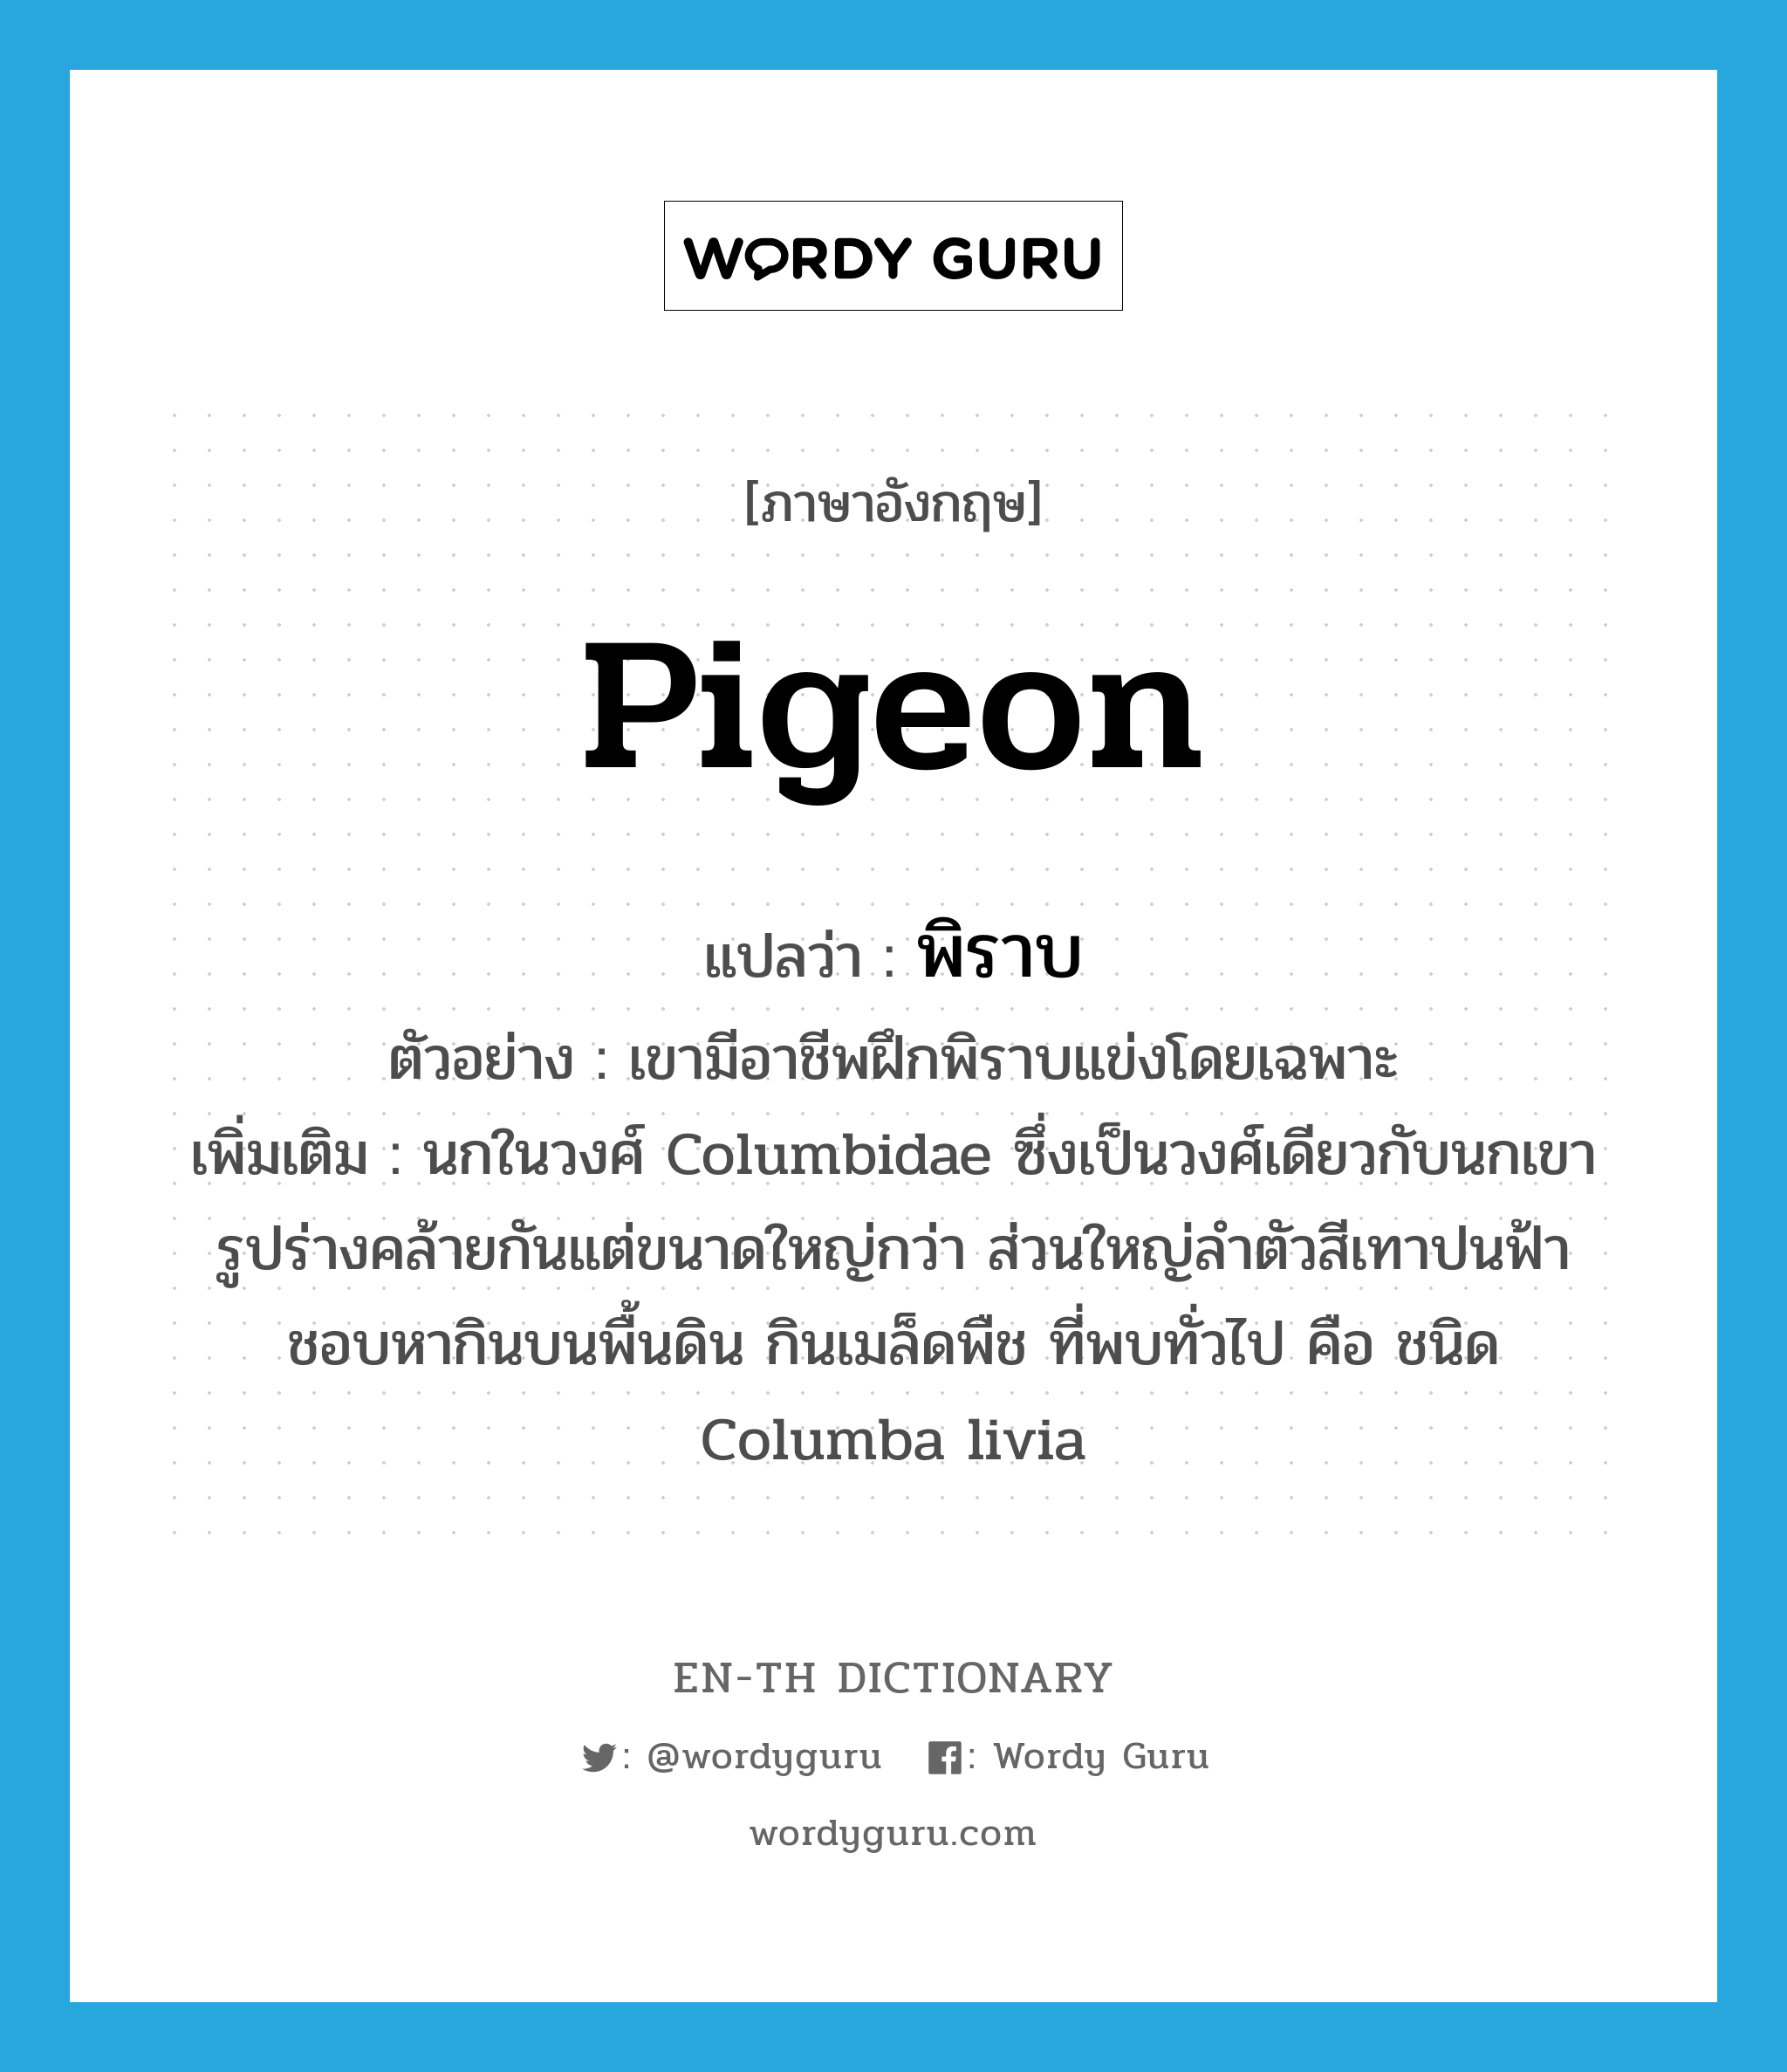 pigeon แปลว่า?, คำศัพท์ภาษาอังกฤษ pigeon แปลว่า พิราบ ประเภท N ตัวอย่าง เขามีอาชีพฝึกพิราบแข่งโดยเฉพาะ เพิ่มเติม นกในวงศ์ Columbidae ซึ่งเป็นวงศ์เดียวกับนกเขา รูปร่างคล้ายกันแต่ขนาดใหญ่กว่า ส่วนใหญ่ลำตัวสีเทาปนฟ้า ชอบหากินบนพื้นดิน กินเมล็ดพืช ที่พบทั่วไป คือ ชนิด Columba livia หมวด N